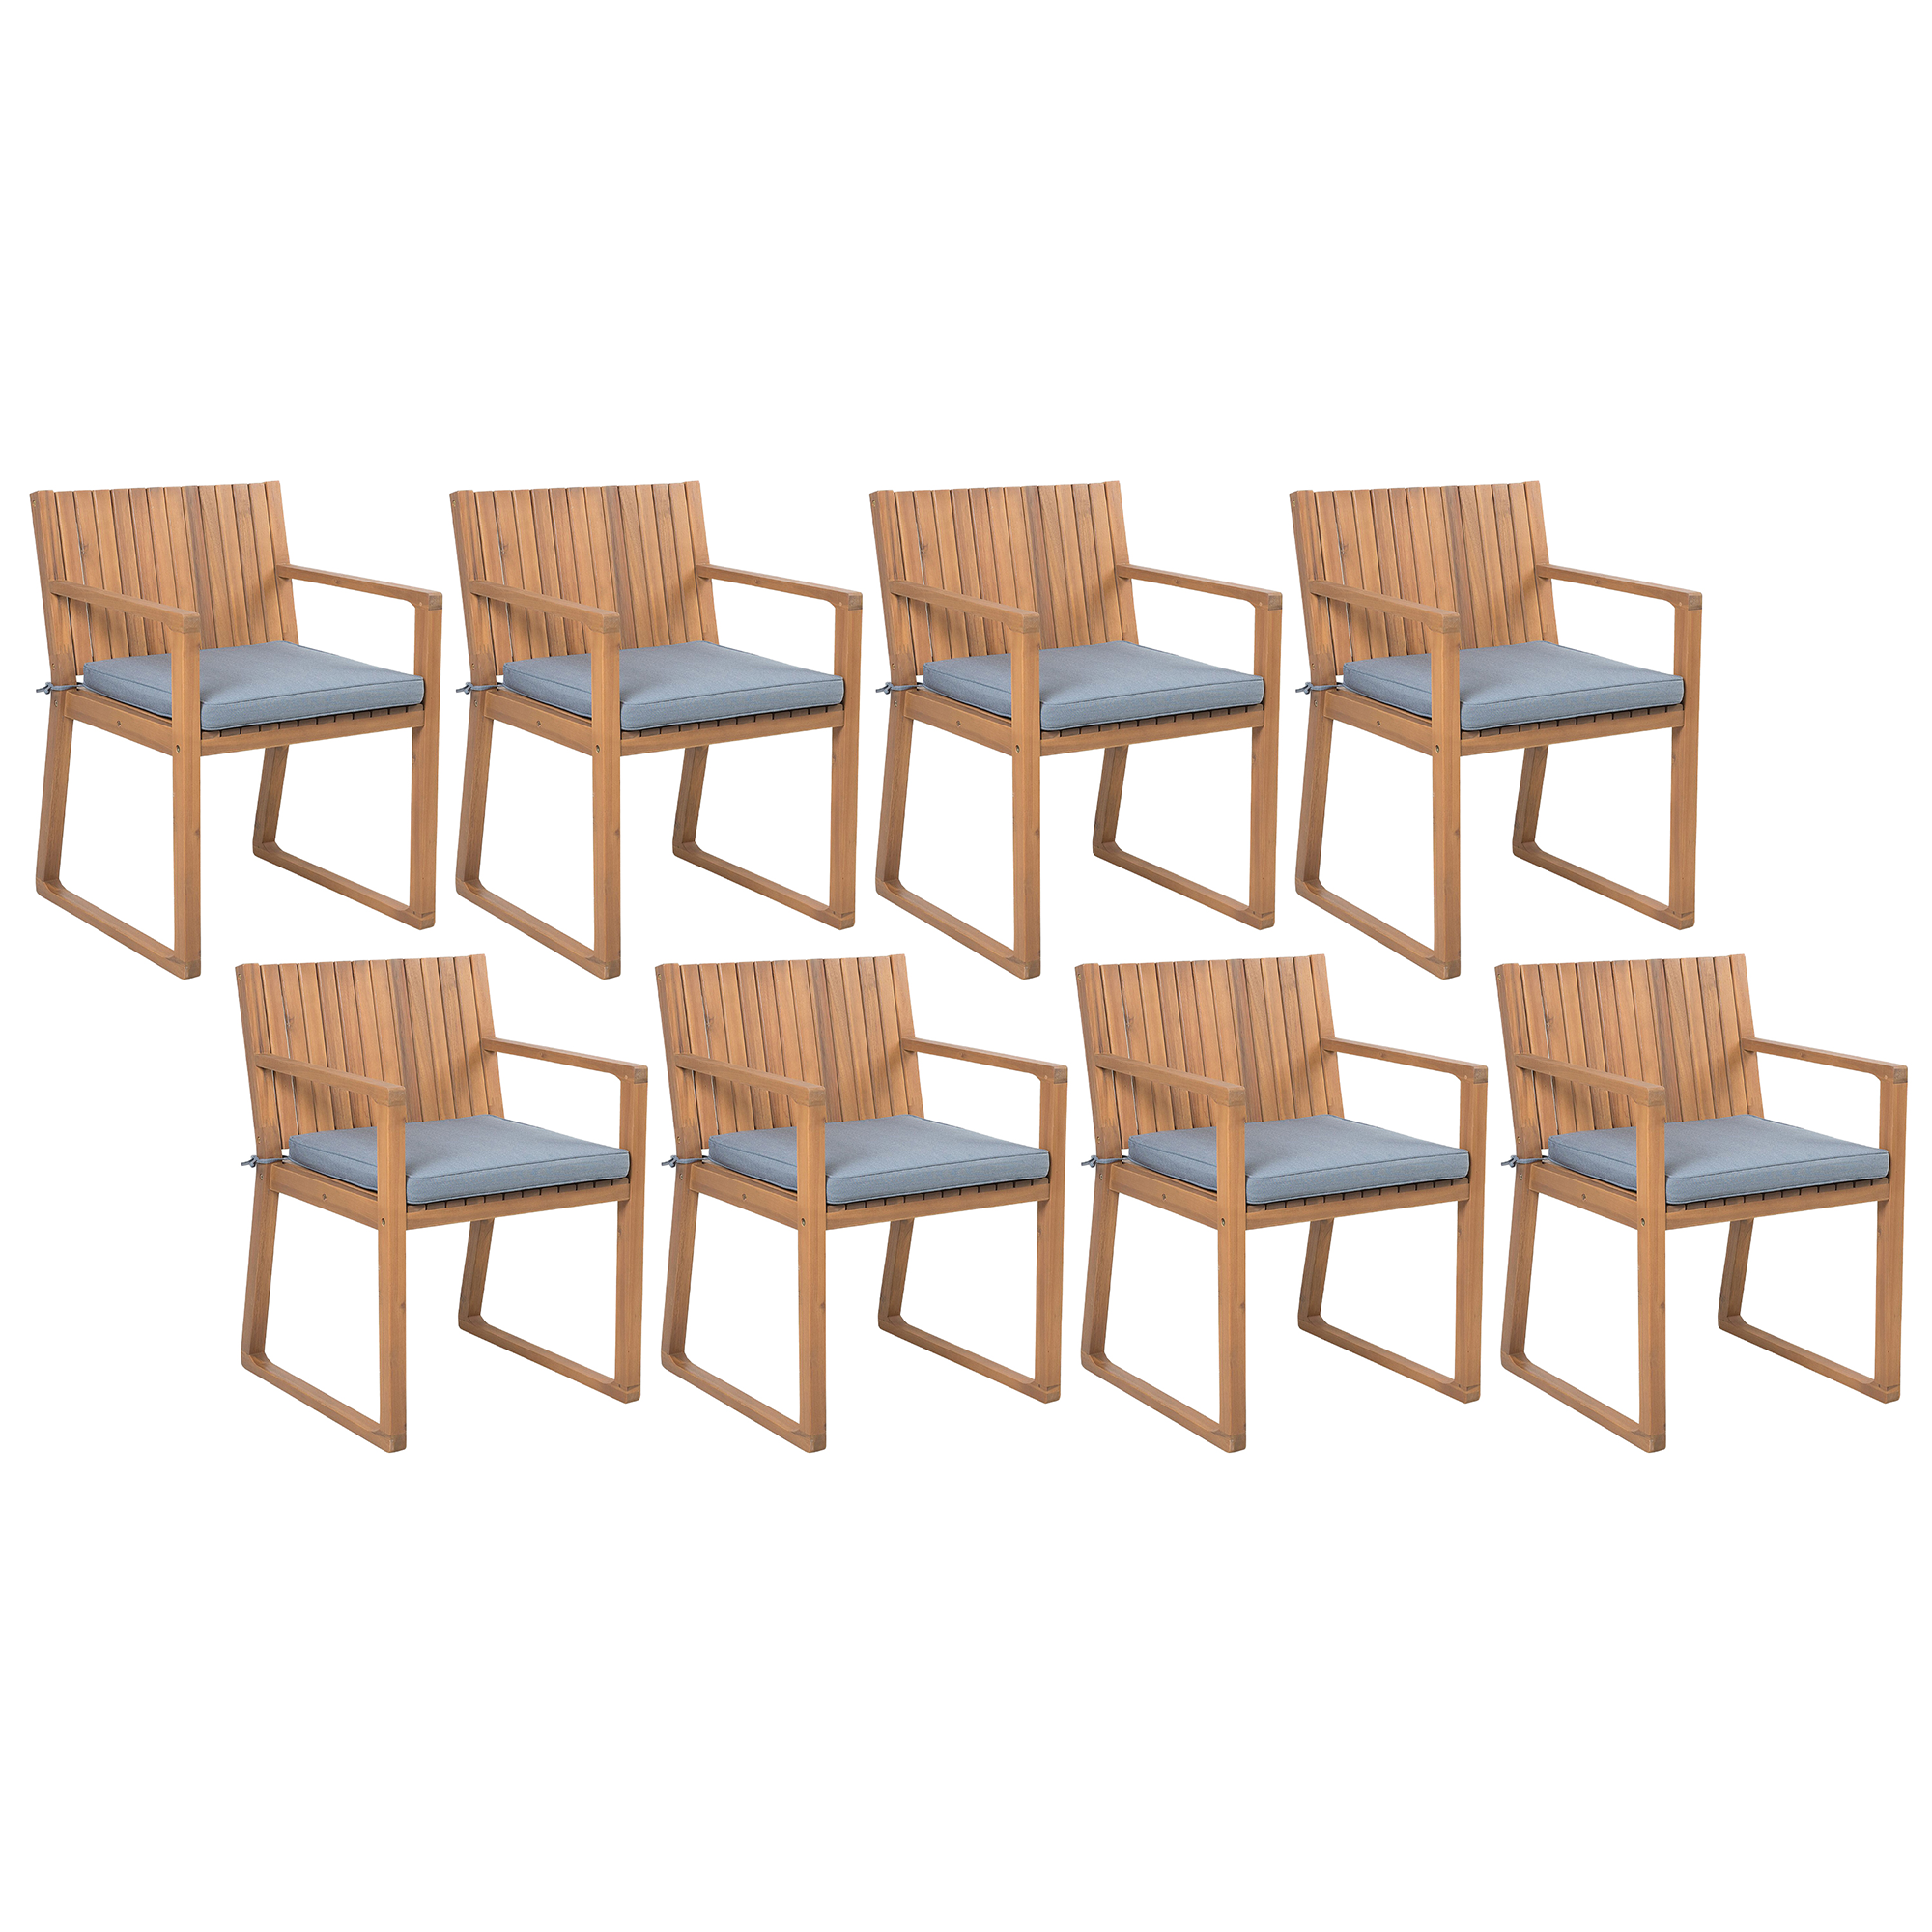 Beliani Sada 8 dřevěných zahradních židlí s modrými polštáři SASSARI